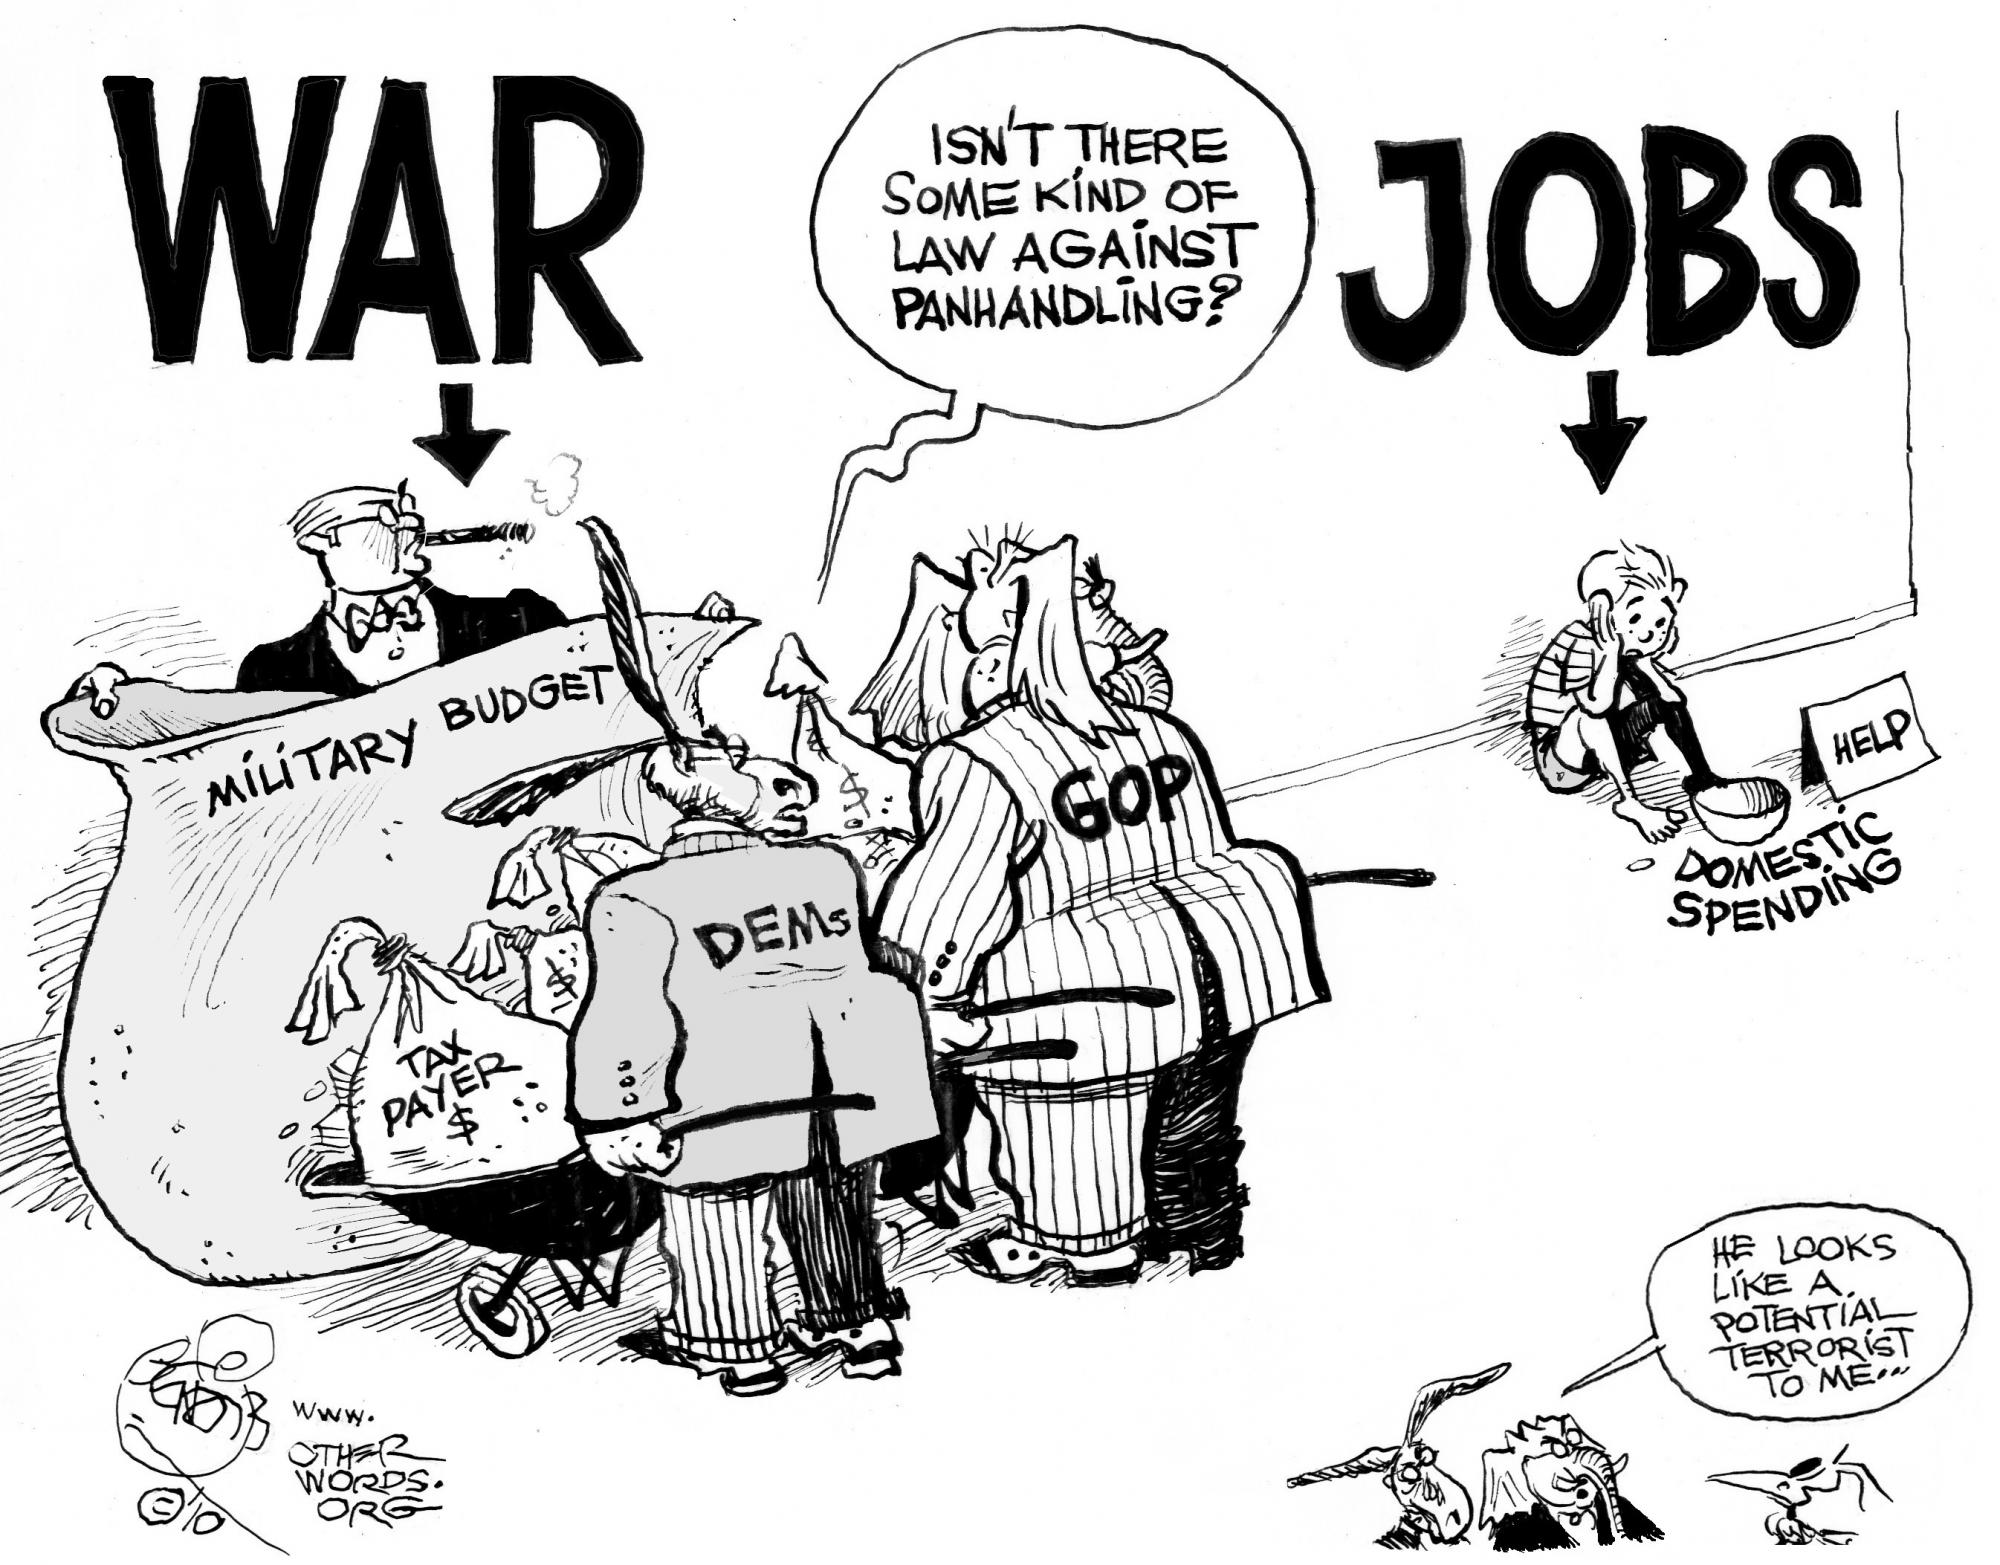 Jobs vs. War